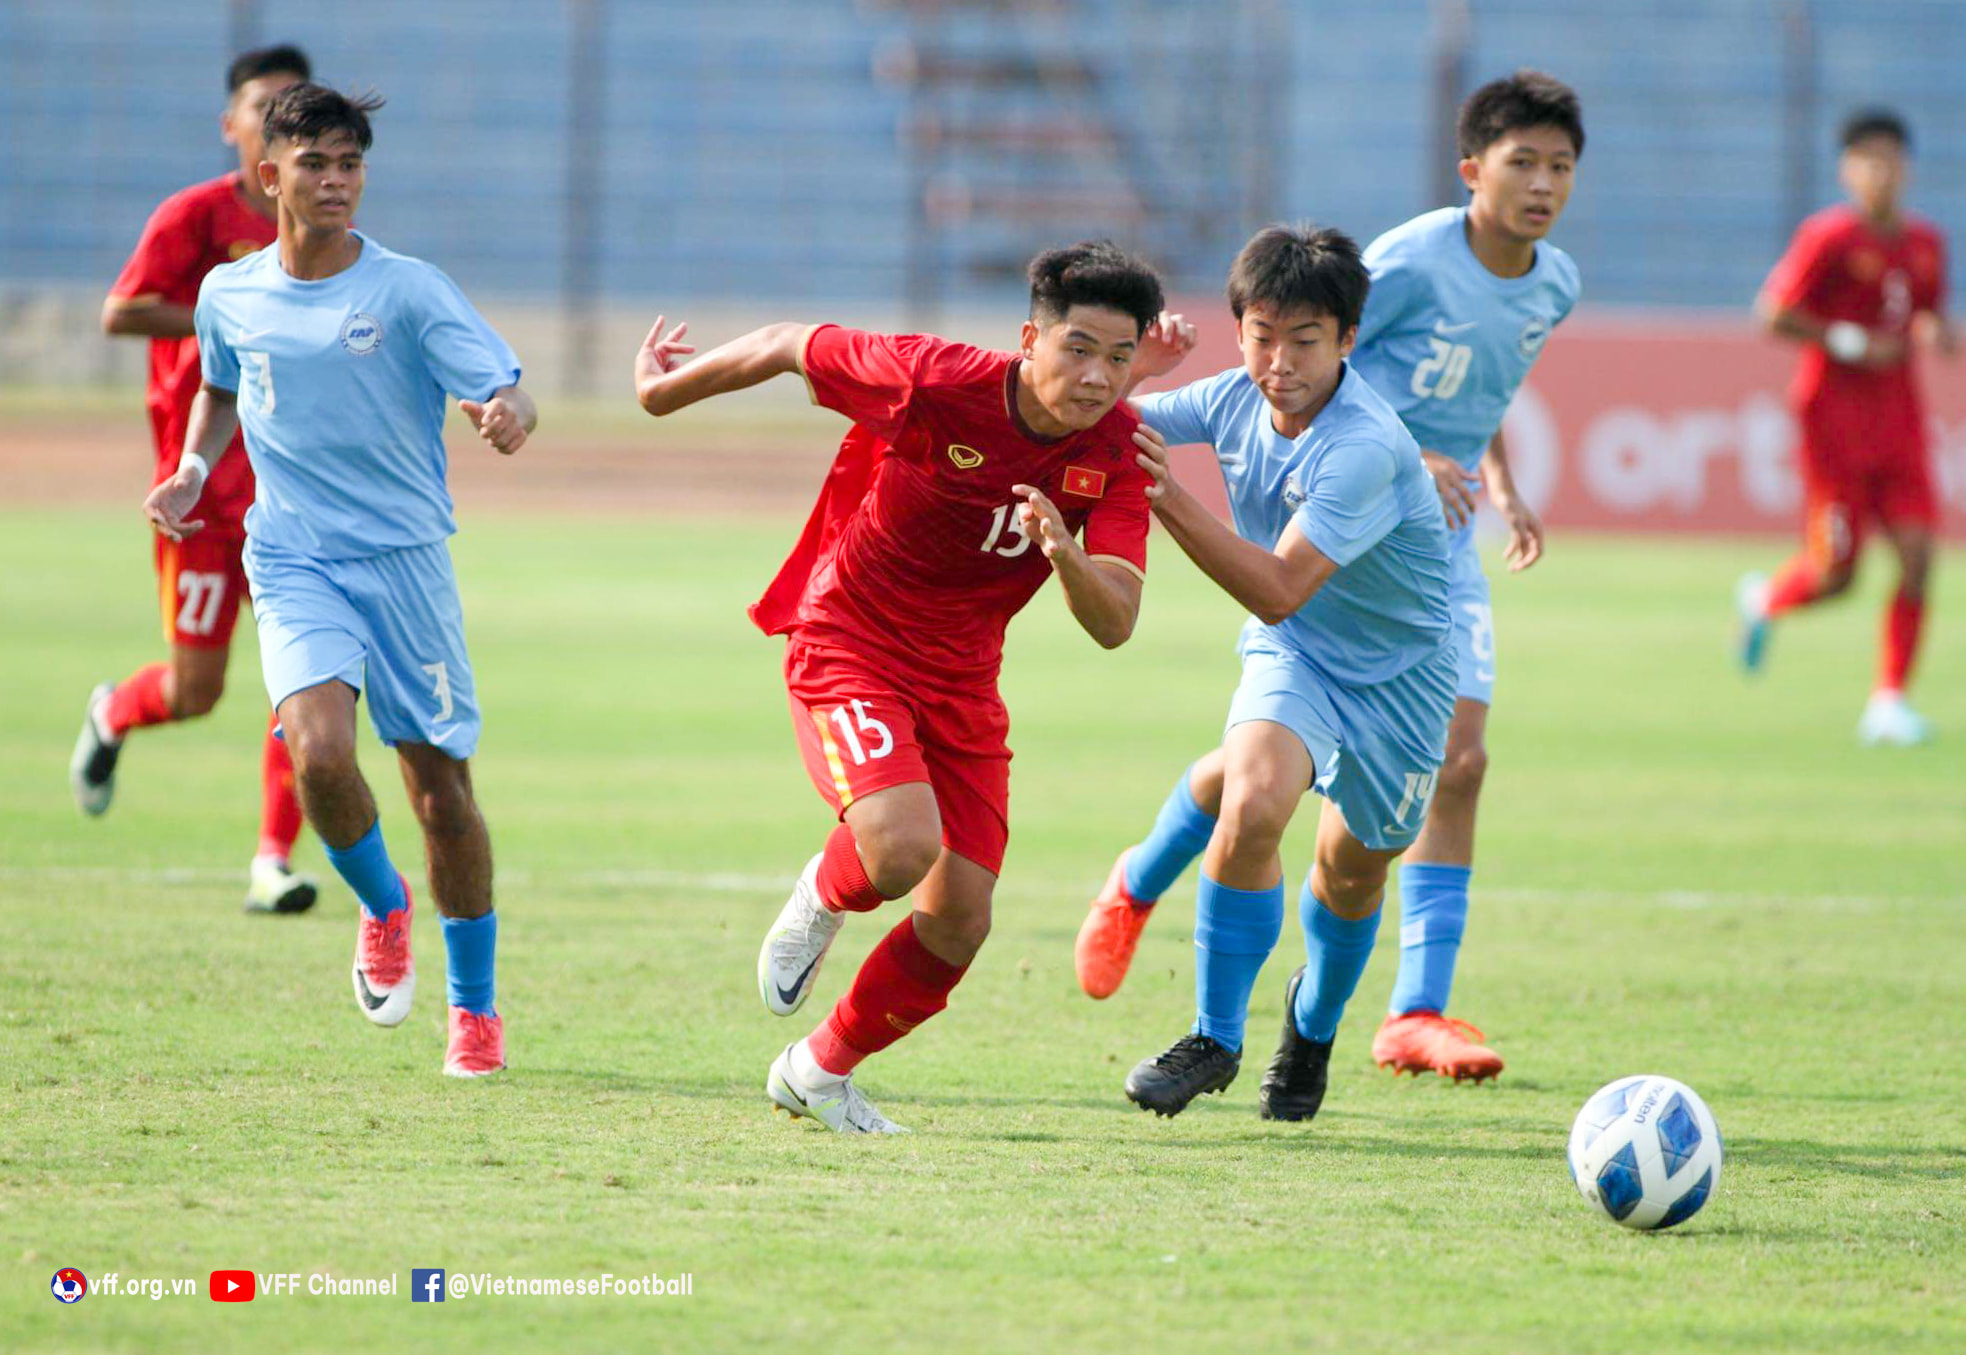 HLV Nguyễn Quốc Tuấn (U16 Việt Nam) quan tâm đặc biệt 1 cầu thủ U16 Philippines - Ảnh 1.